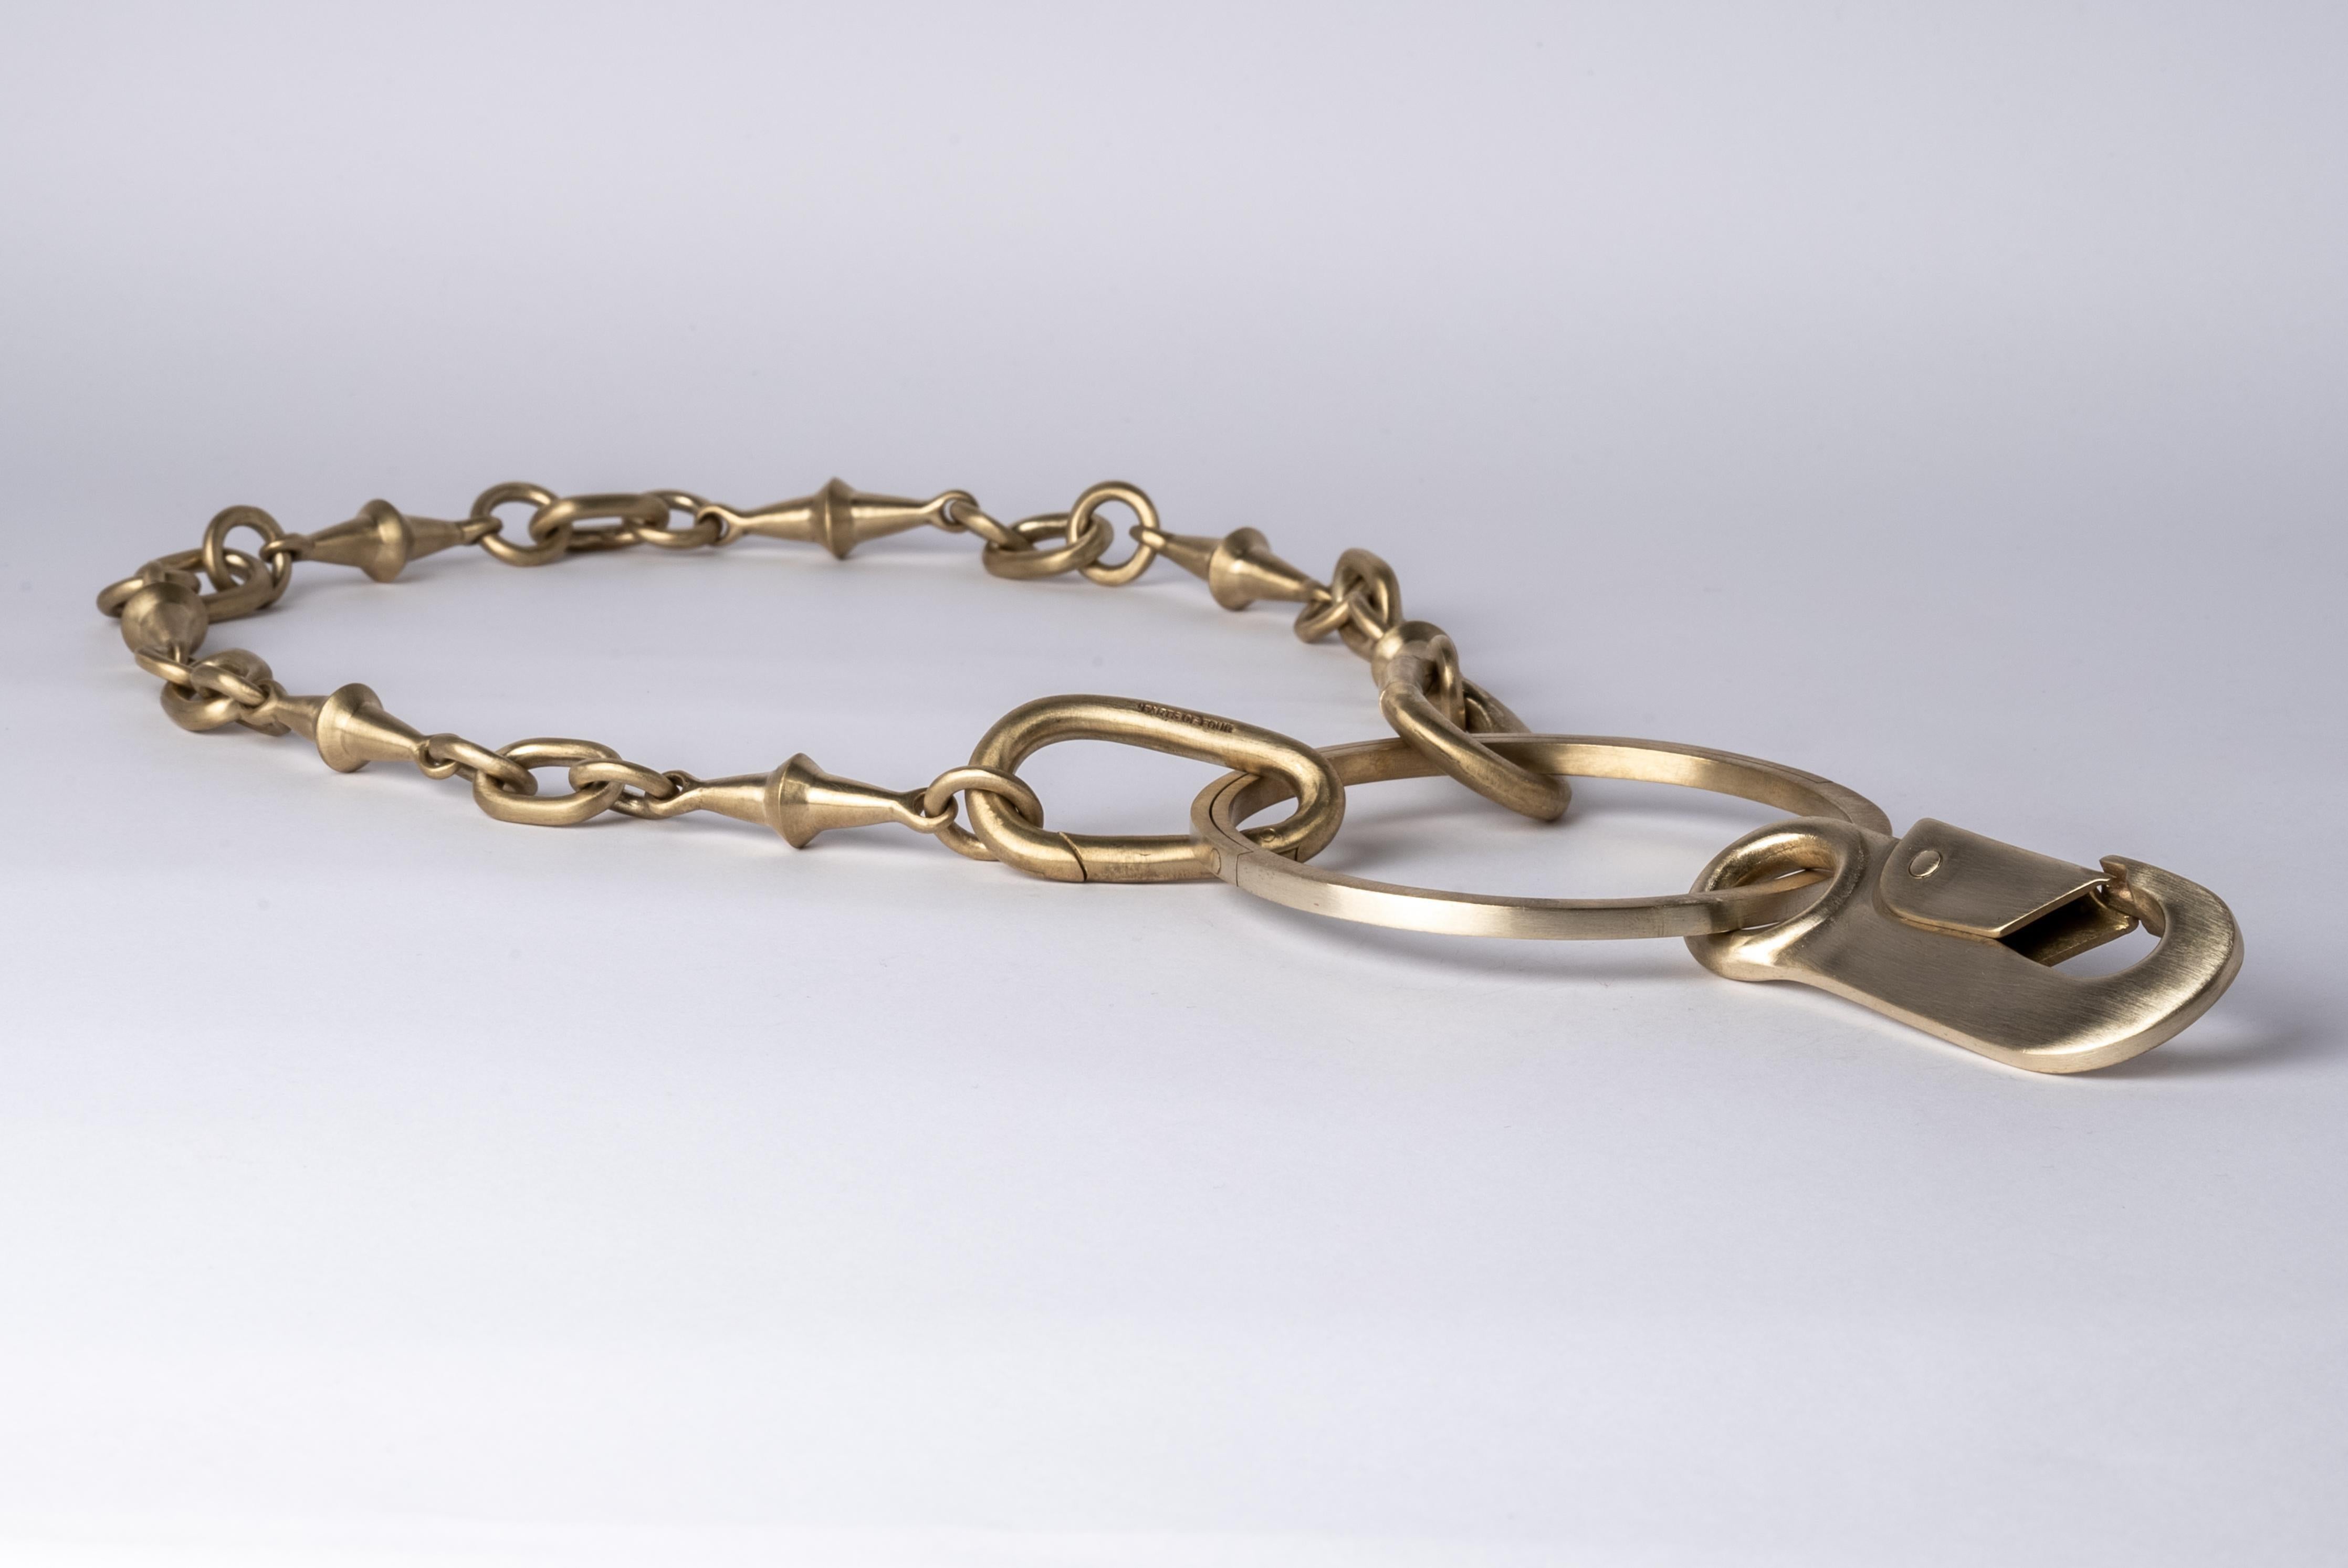 Totemische Halskette aus Messing.
Das Charm System ist eine zusammenhängende Gruppe von Produkten, die gemischt und kombiniert oder einzeln getragen werden können. 
Kettenlänge (von Verschluss zu Verschluss): 670 mm
Durchmesser des Portals: 83